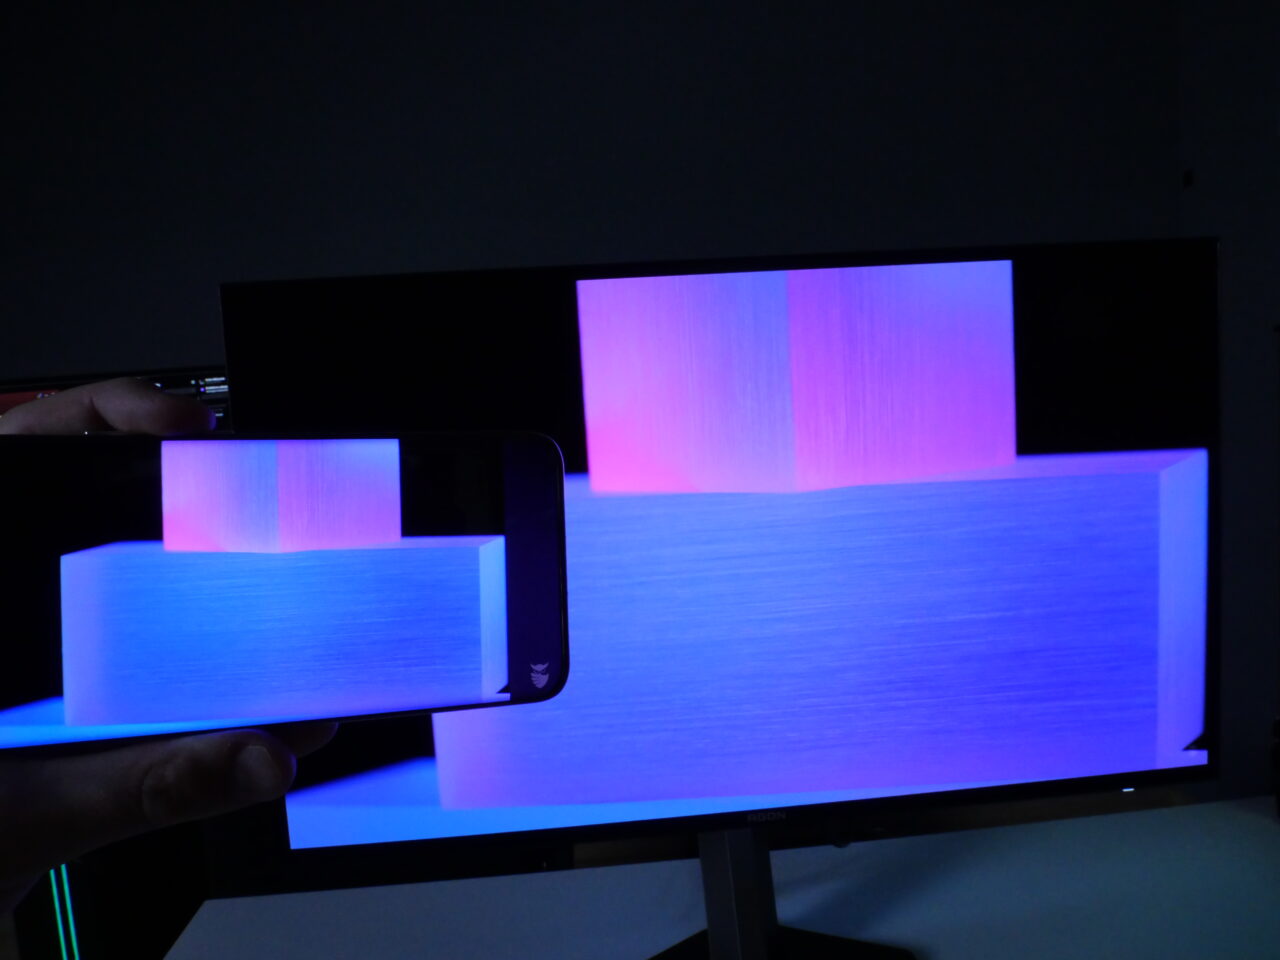 Ręka trzymająca smartfon, który wyświetla obraz przedstawiający różowe i niebieskie światła, na tle monitora komputerowego z tym samym obrazem.